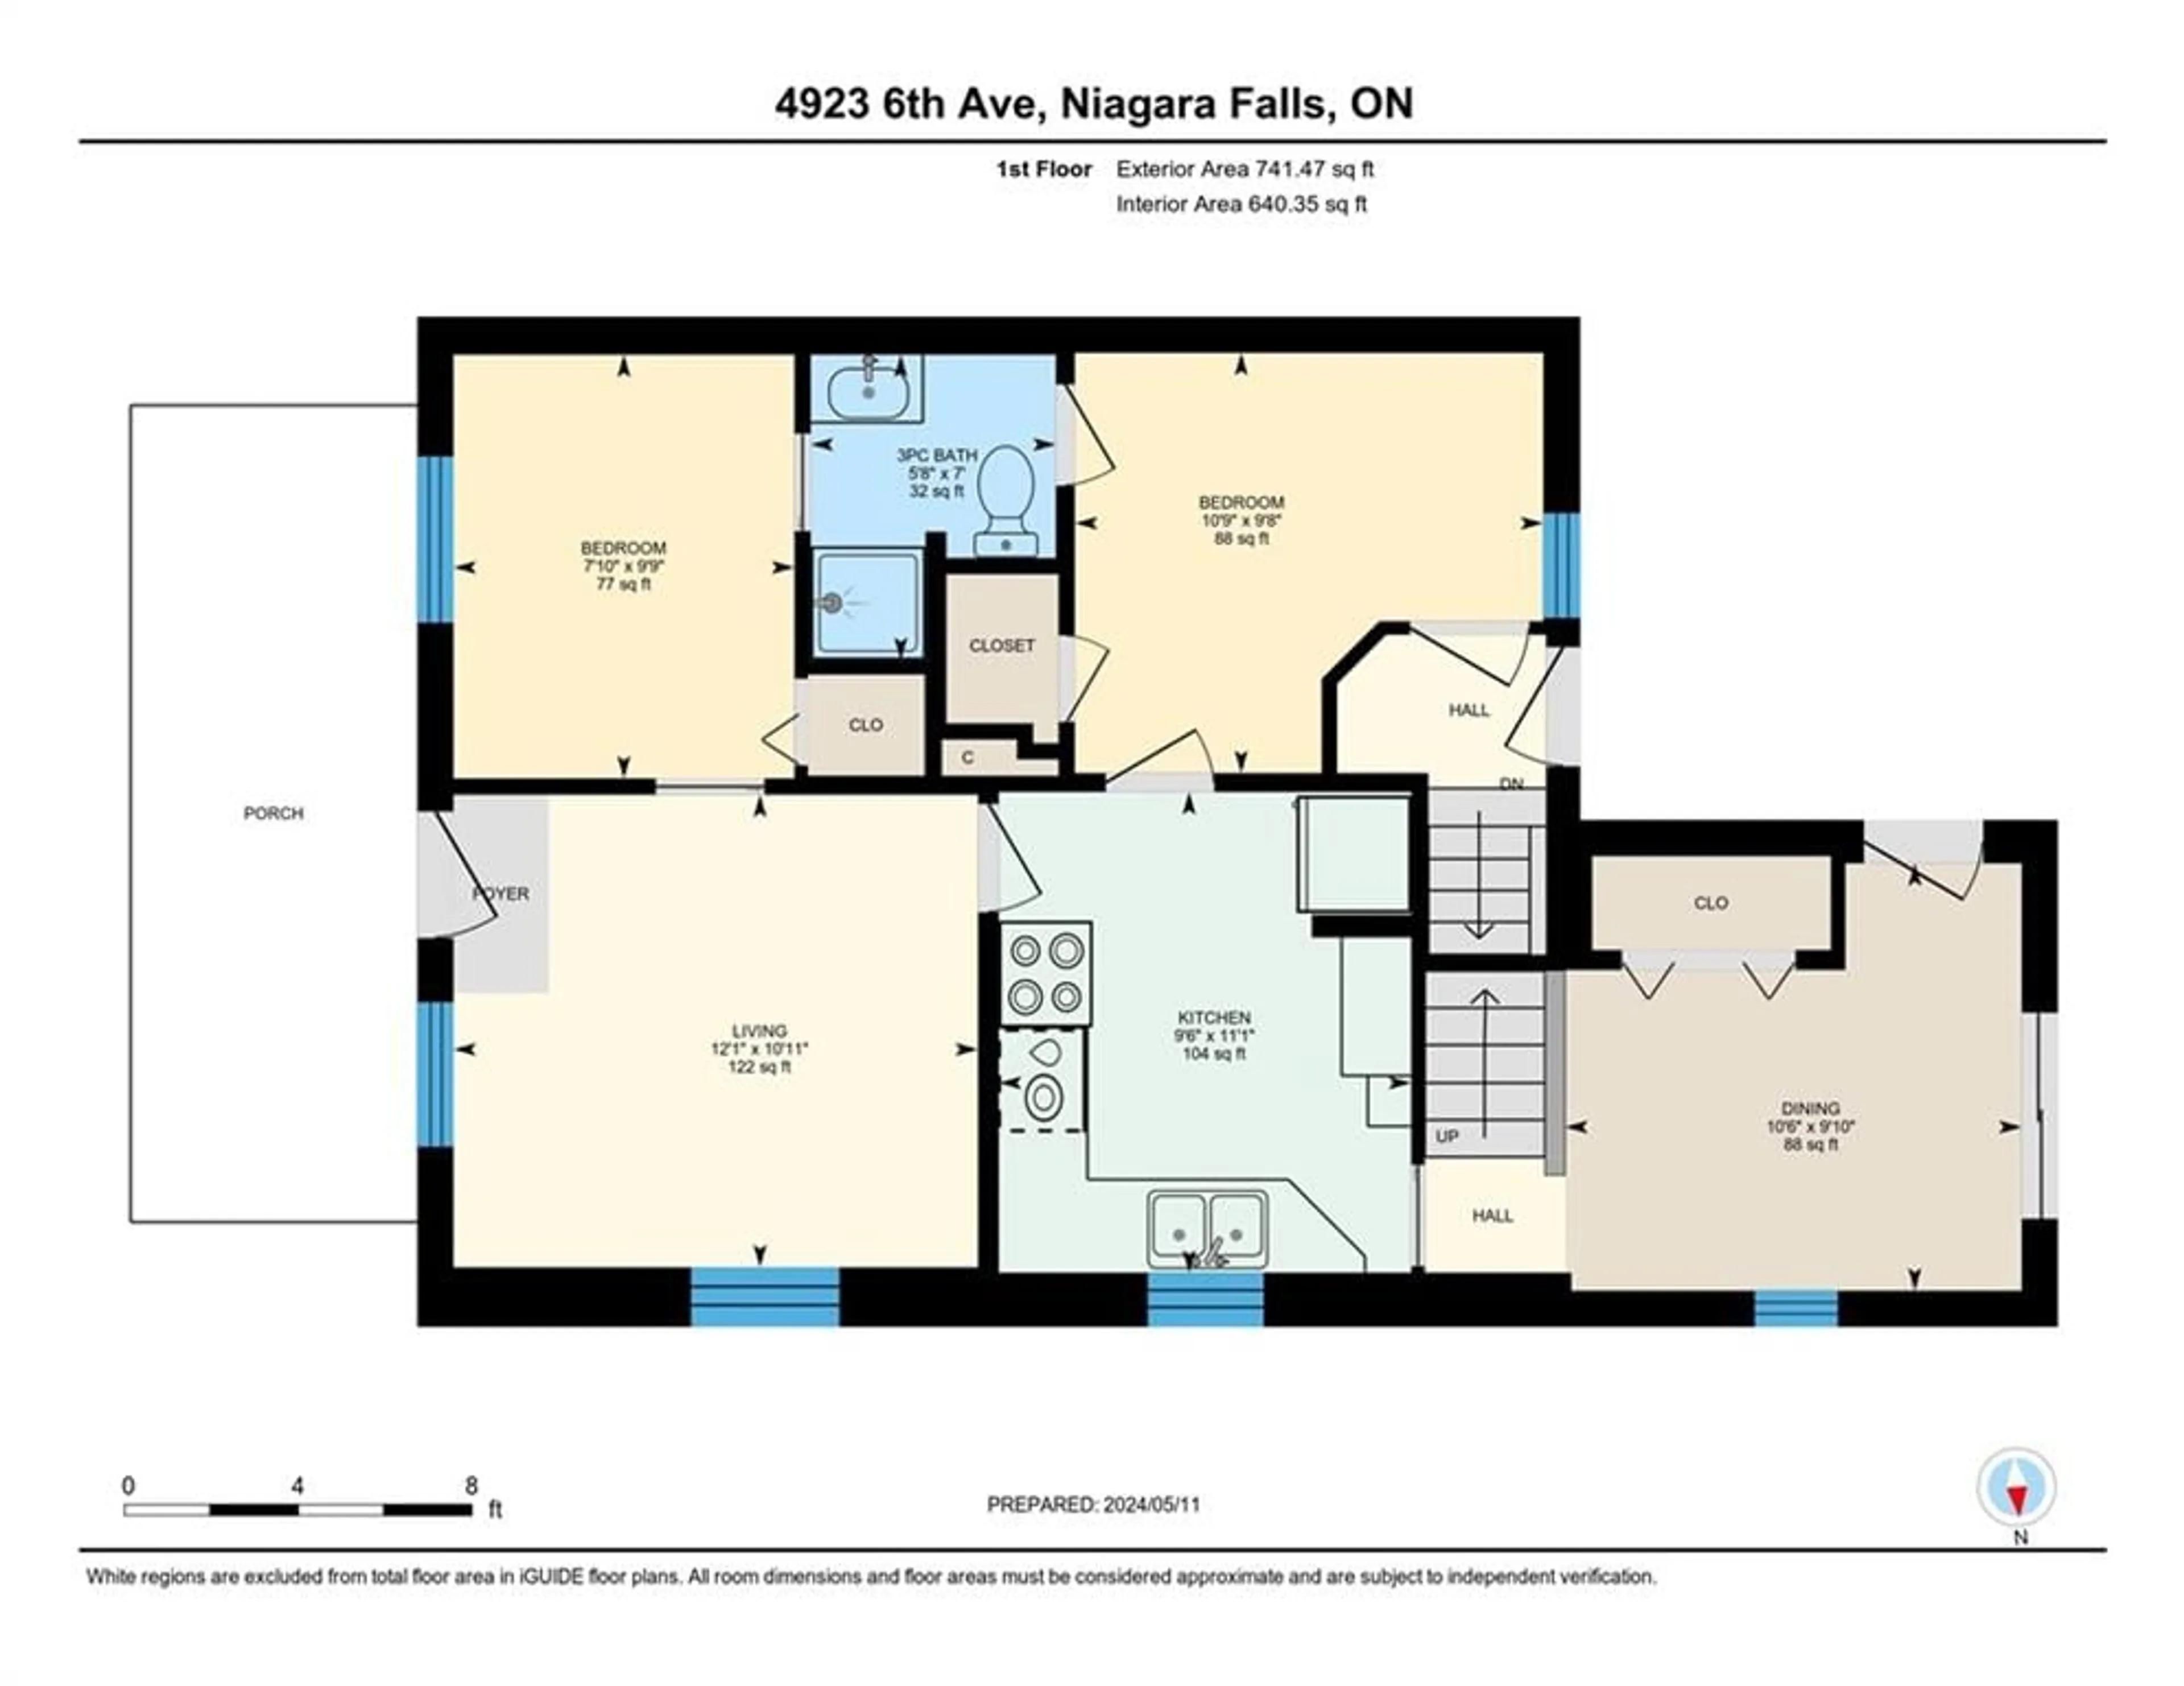 Floor plan for 4923 Sixth Ave, Niagara Falls Ontario L2E 4V1